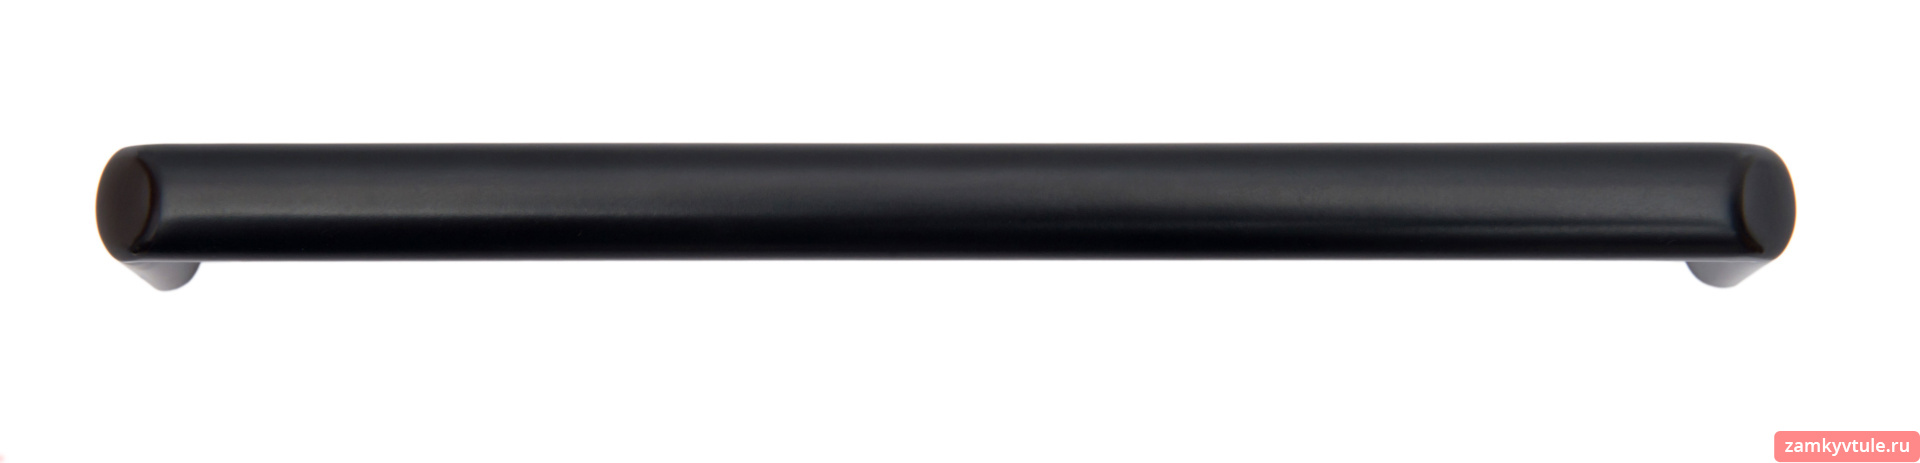 Ручка BOYARD RS296BL.4/160